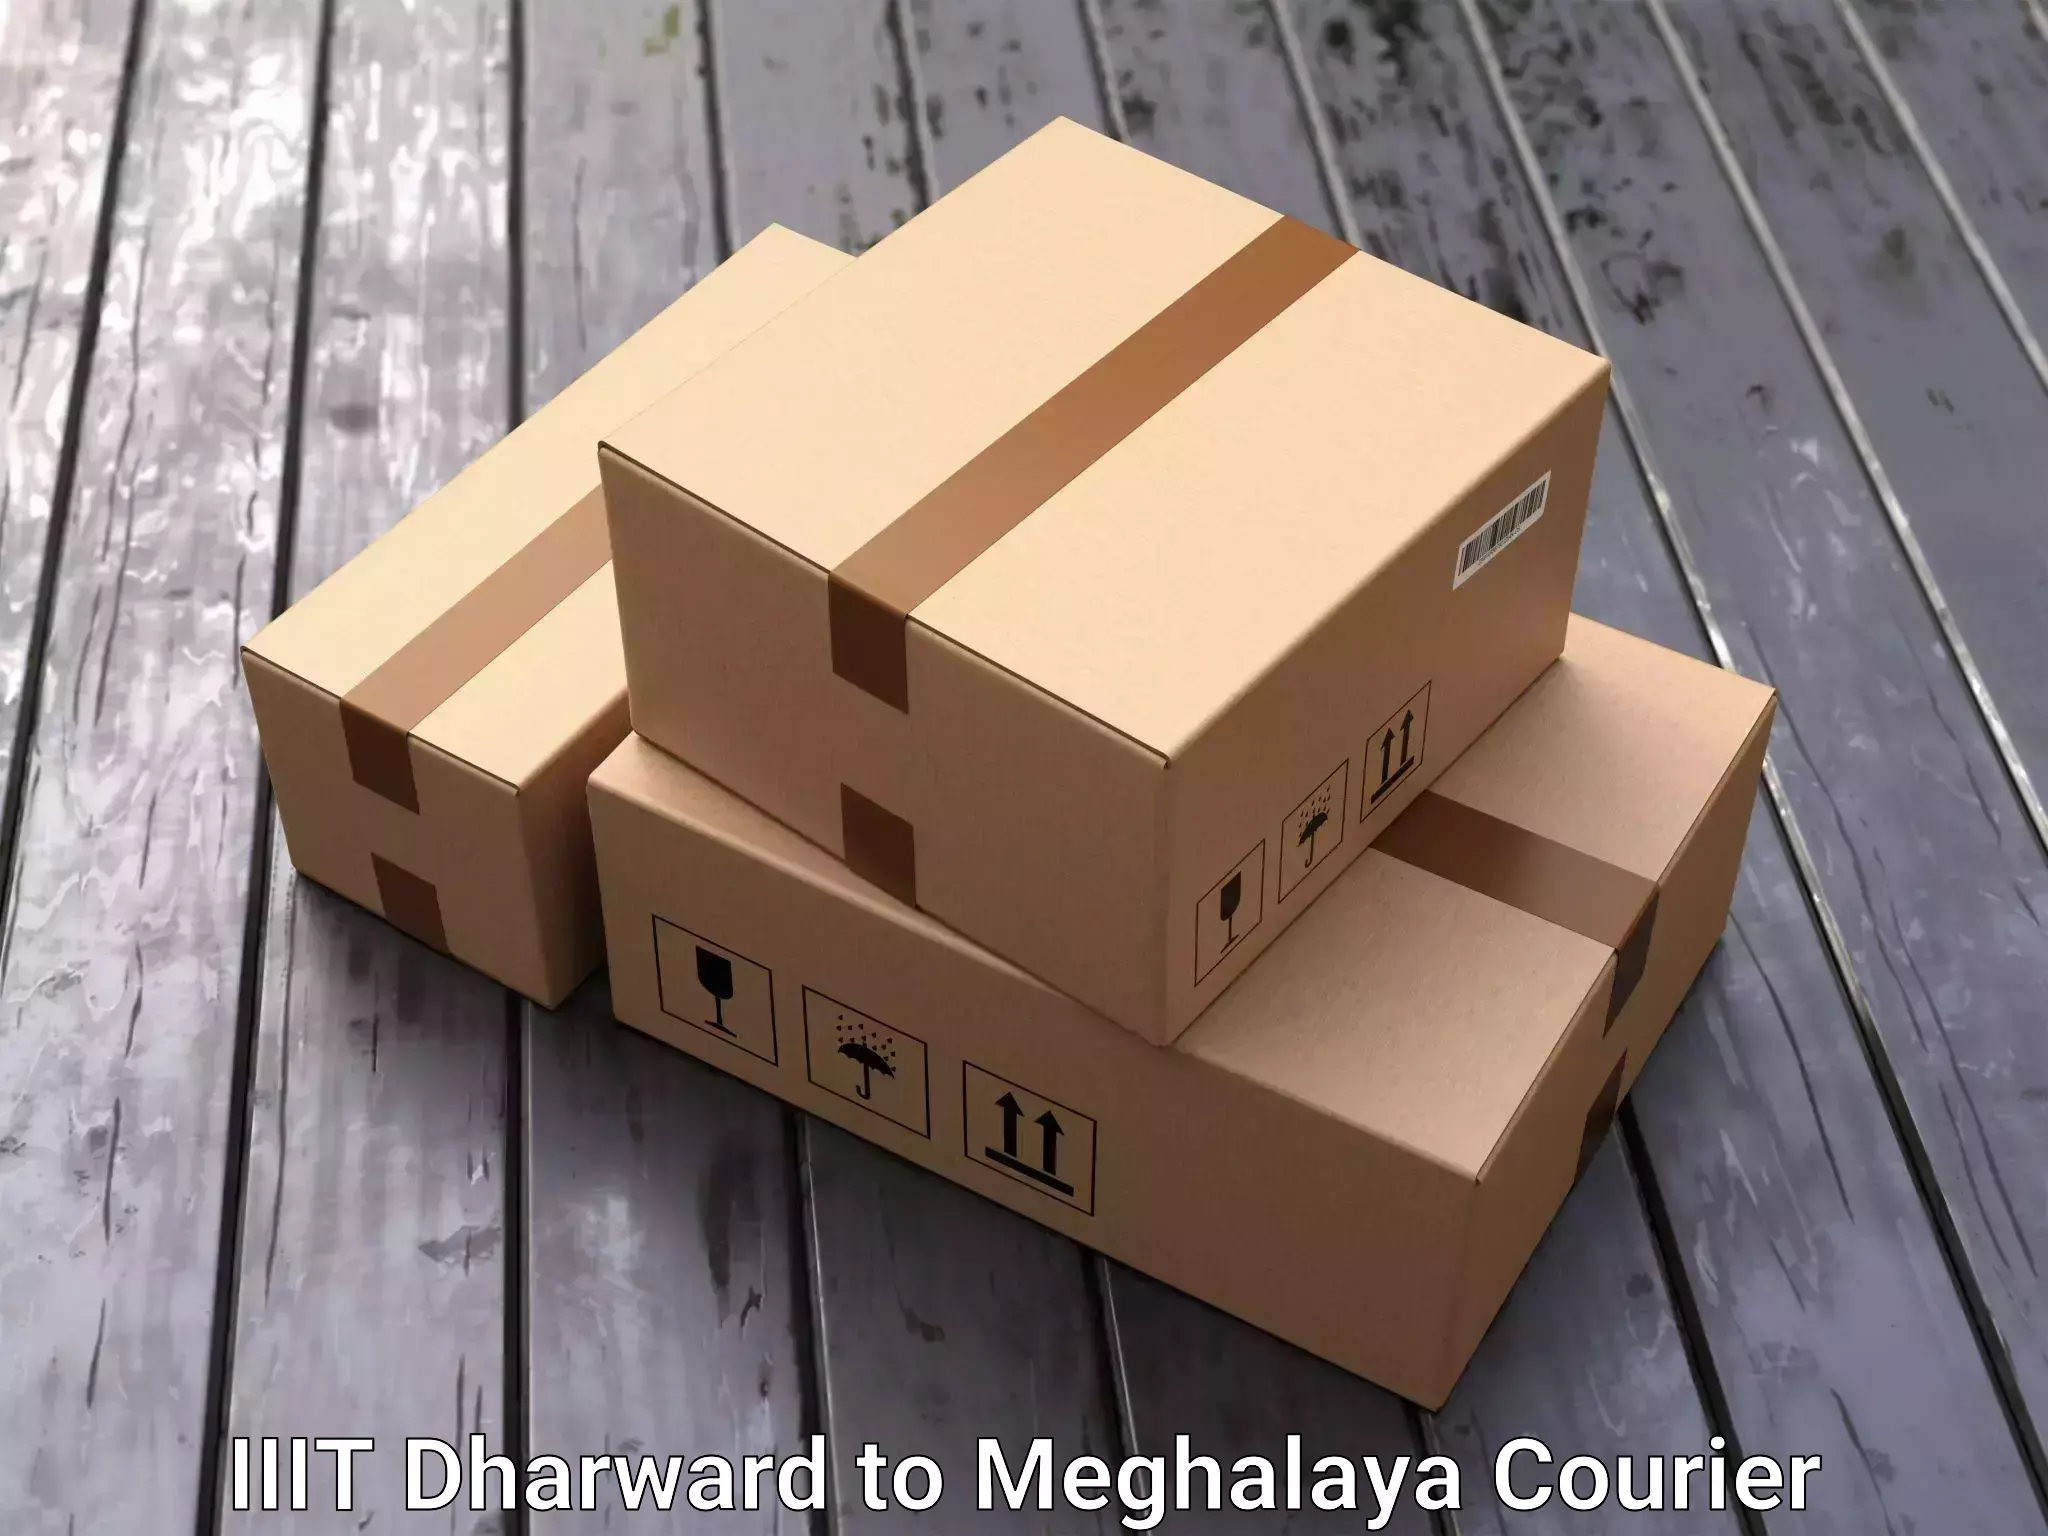 Professional home movers IIIT Dharward to Meghalaya